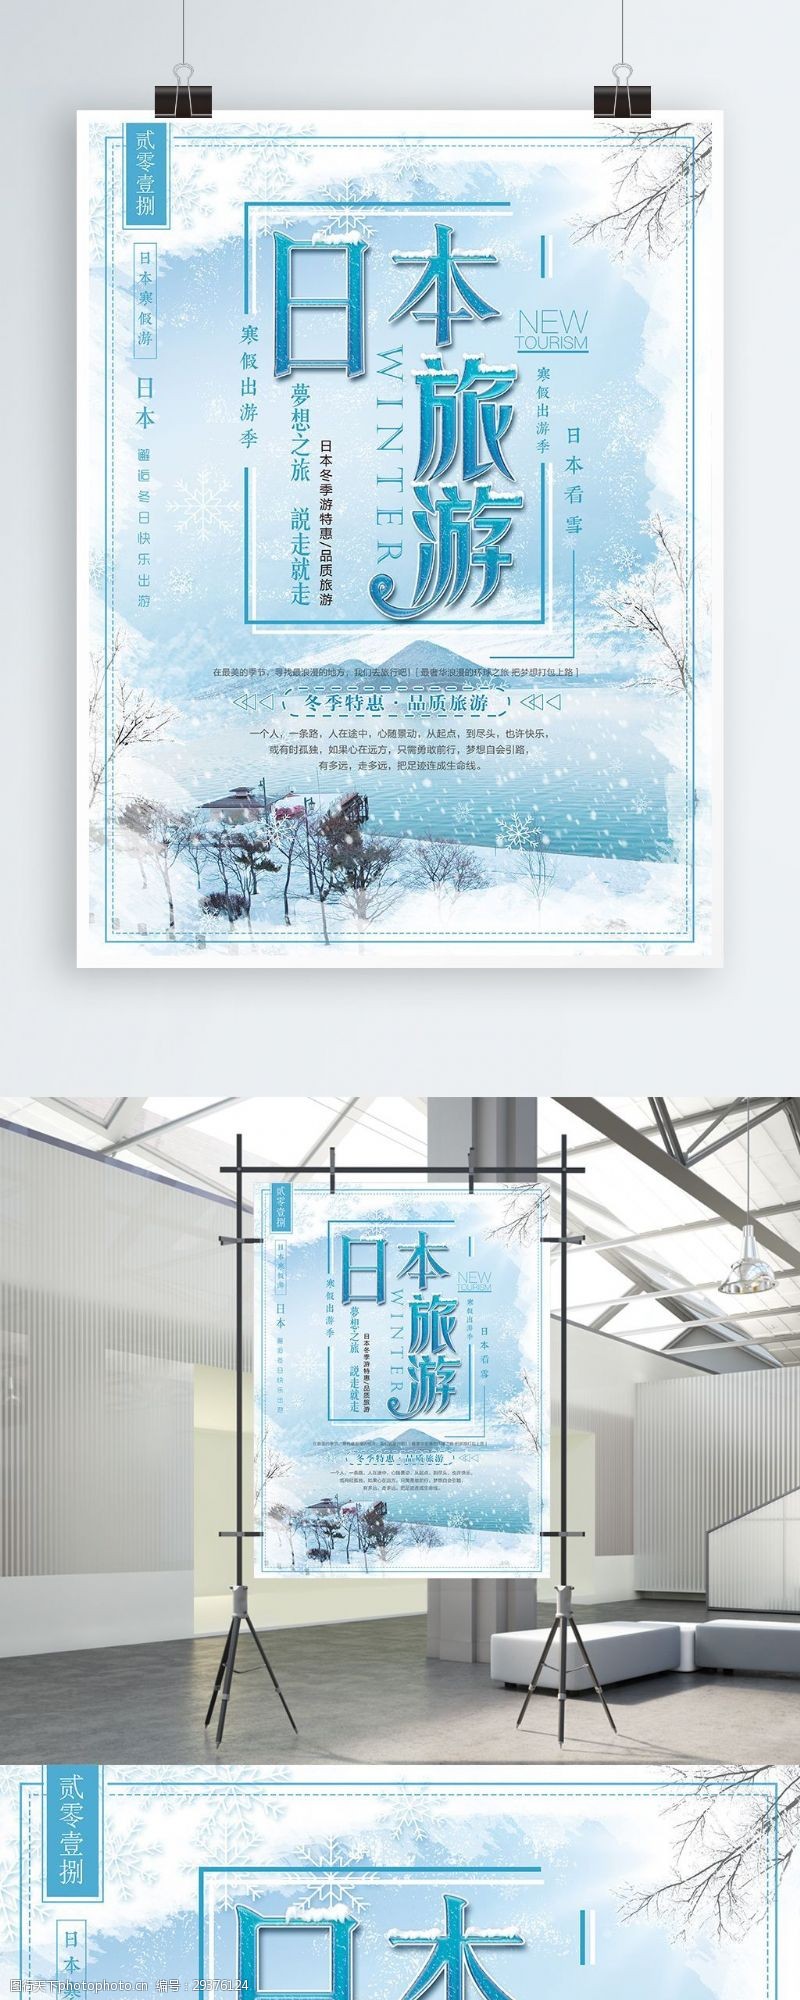 促销旅游蓝色清新冬季雪景日本旅游促销海报